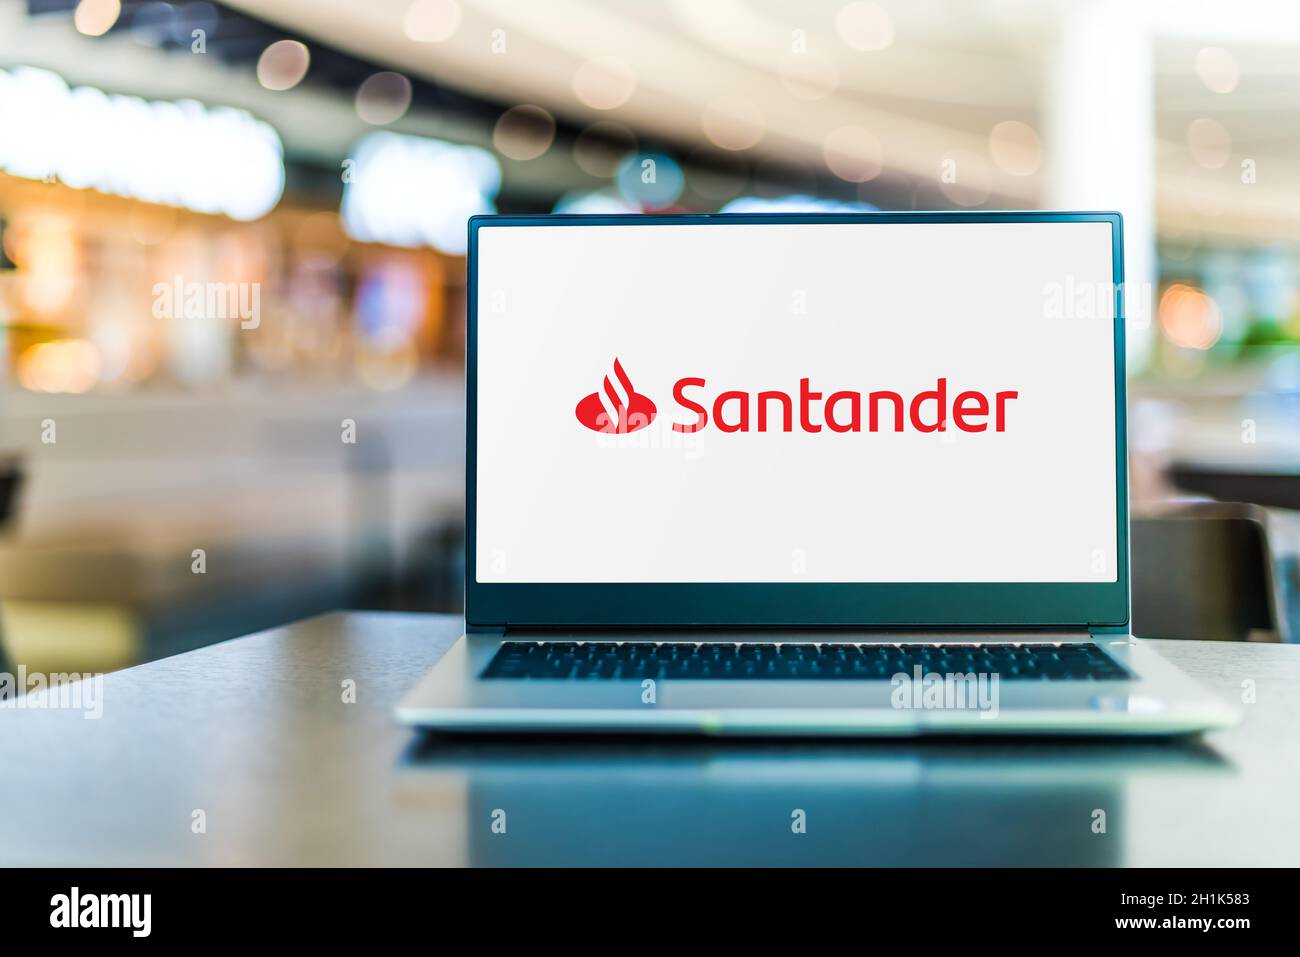 POZNAN, POL - SEP 23, 2020: Ordinateur portable affichant le logo de Banco Santander, S.A., une société multinationale de services financiers basée à Madrid et S. Banque D'Images